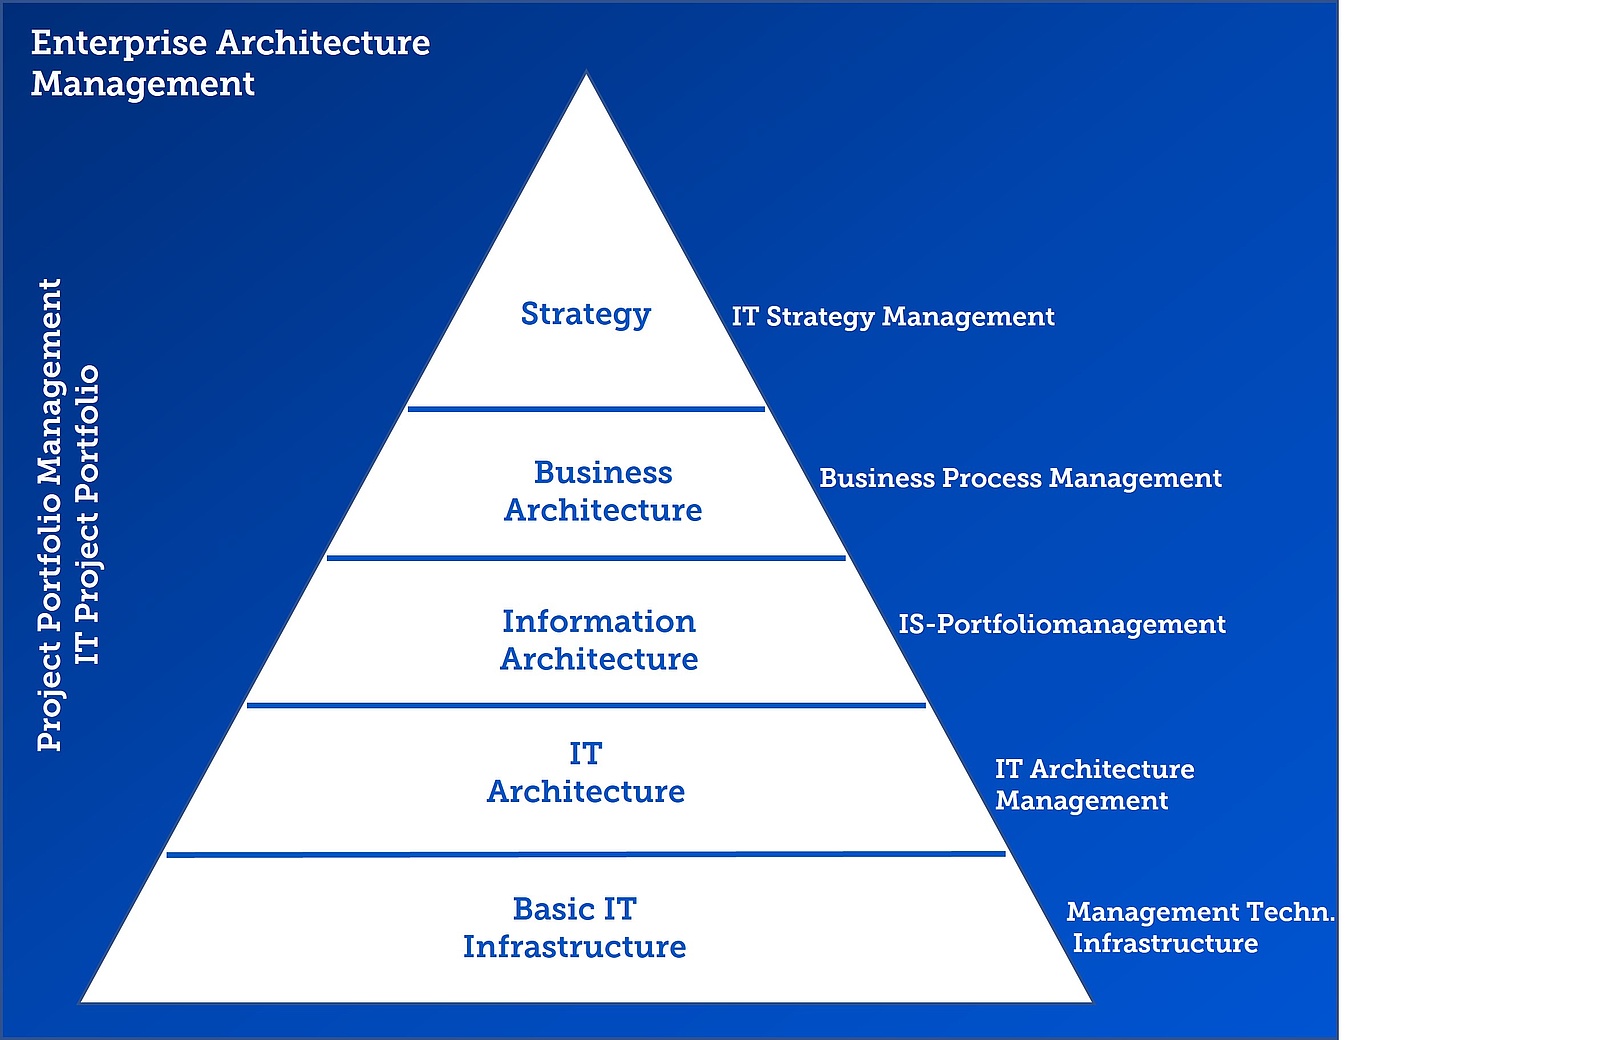 Elements of Enterprise Architecture Management